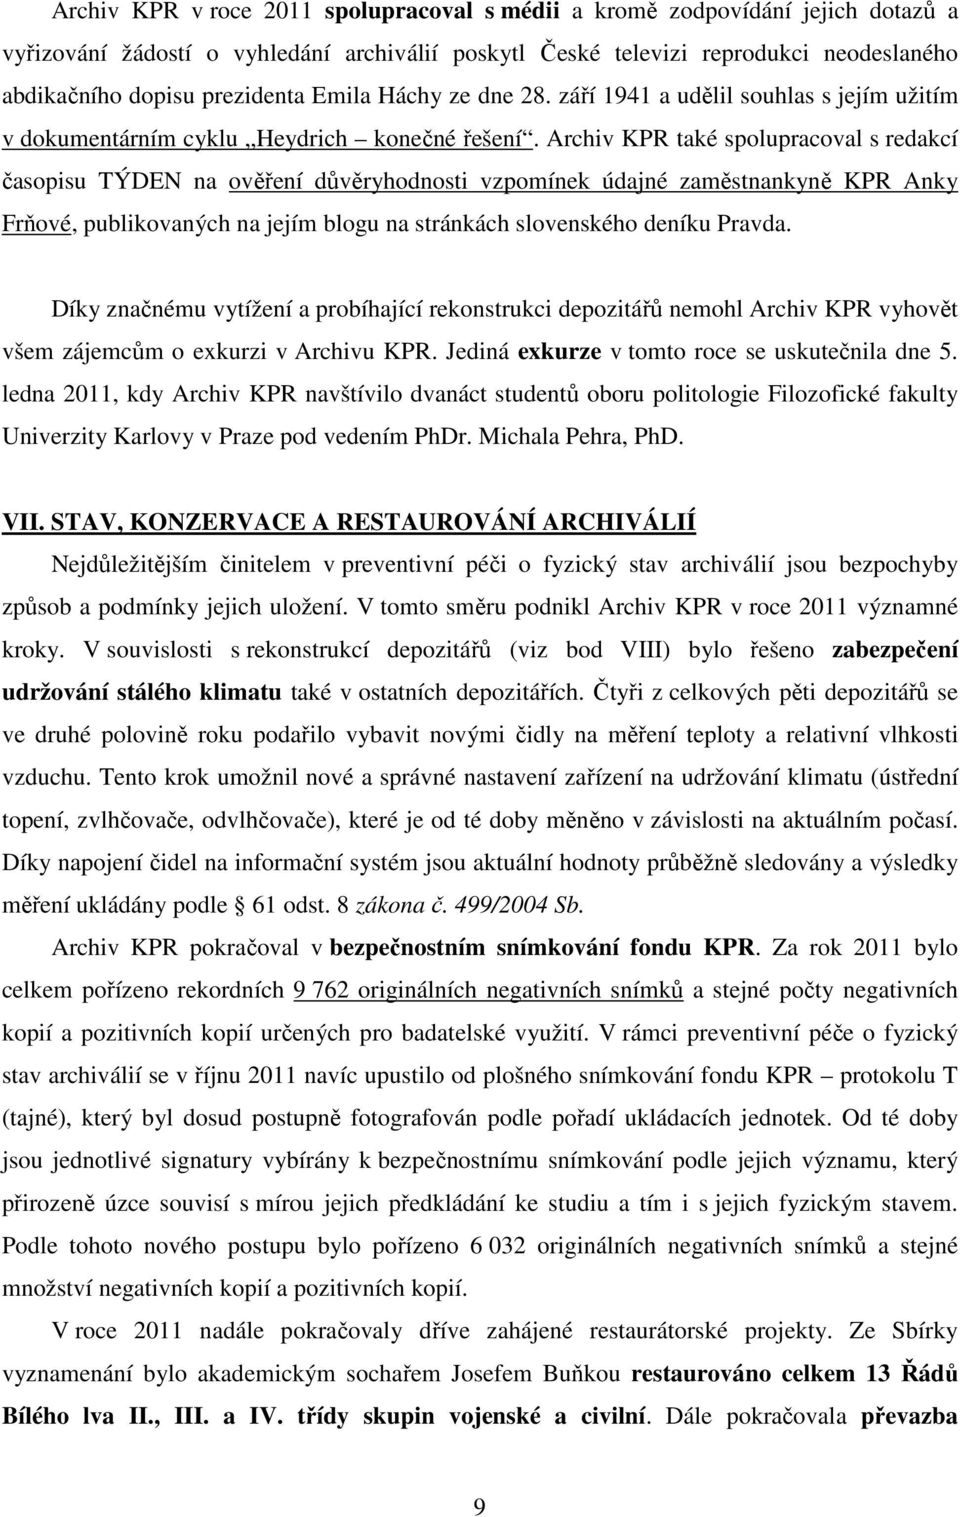 Archiv KPR také spolupracoval s redakcí časopisu TÝDEN na ověření důvěryhodnosti vzpomínek údajné zaměstnankyně KPR Anky Frňové, publikovaných na jejím blogu na stránkách slovenského deníku Pravda.